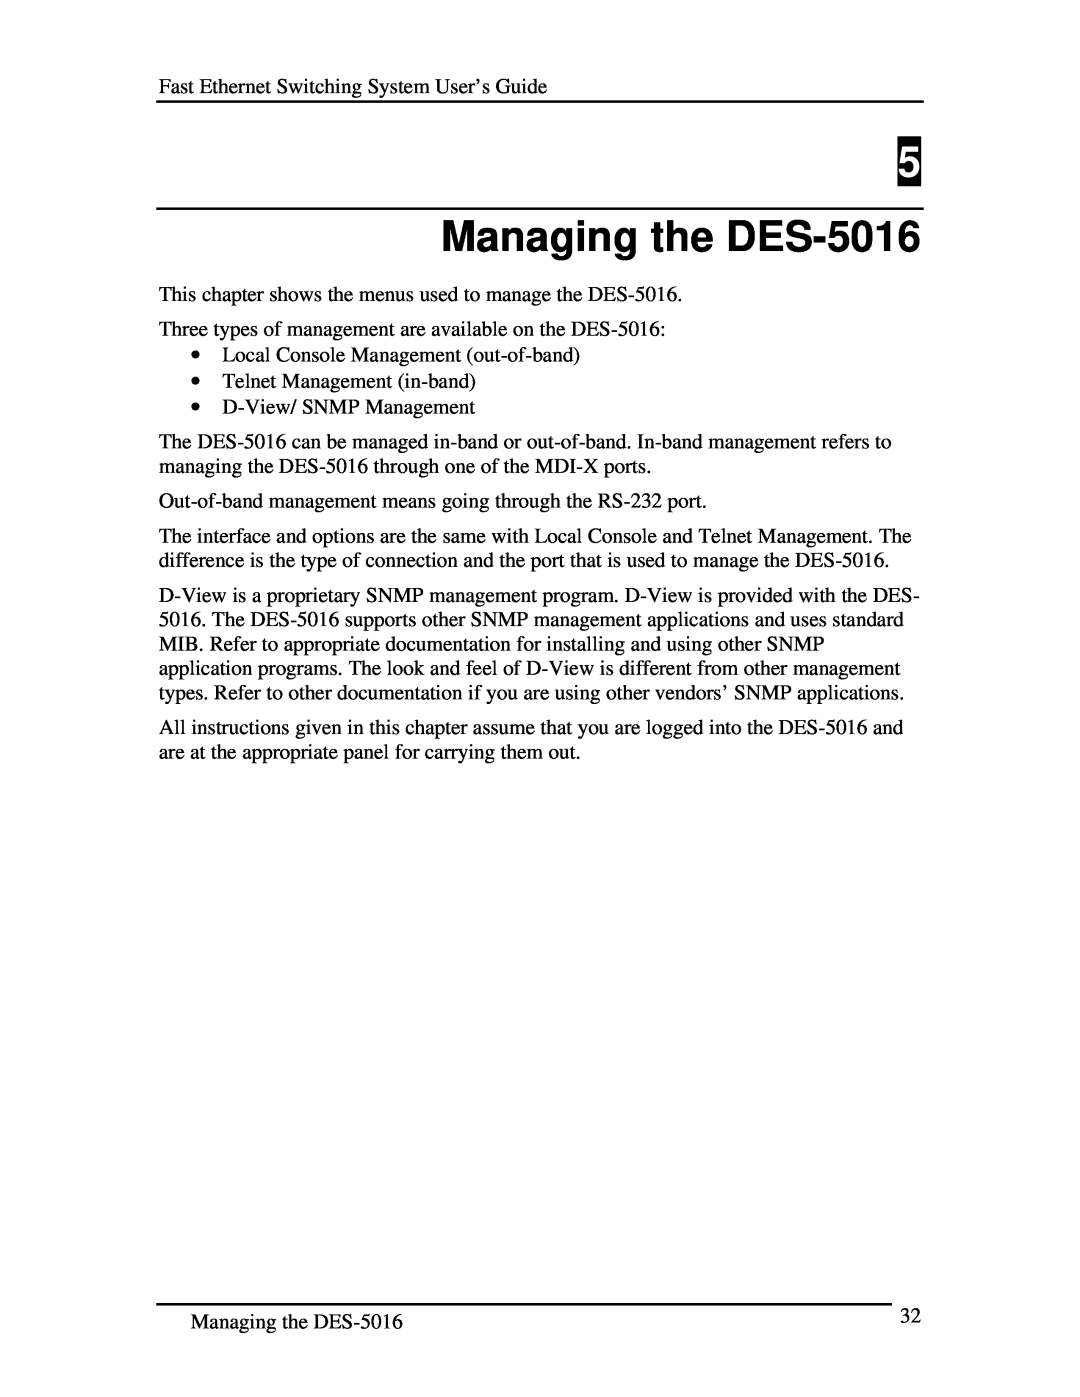 D-Link manual Managing the DES-5016 